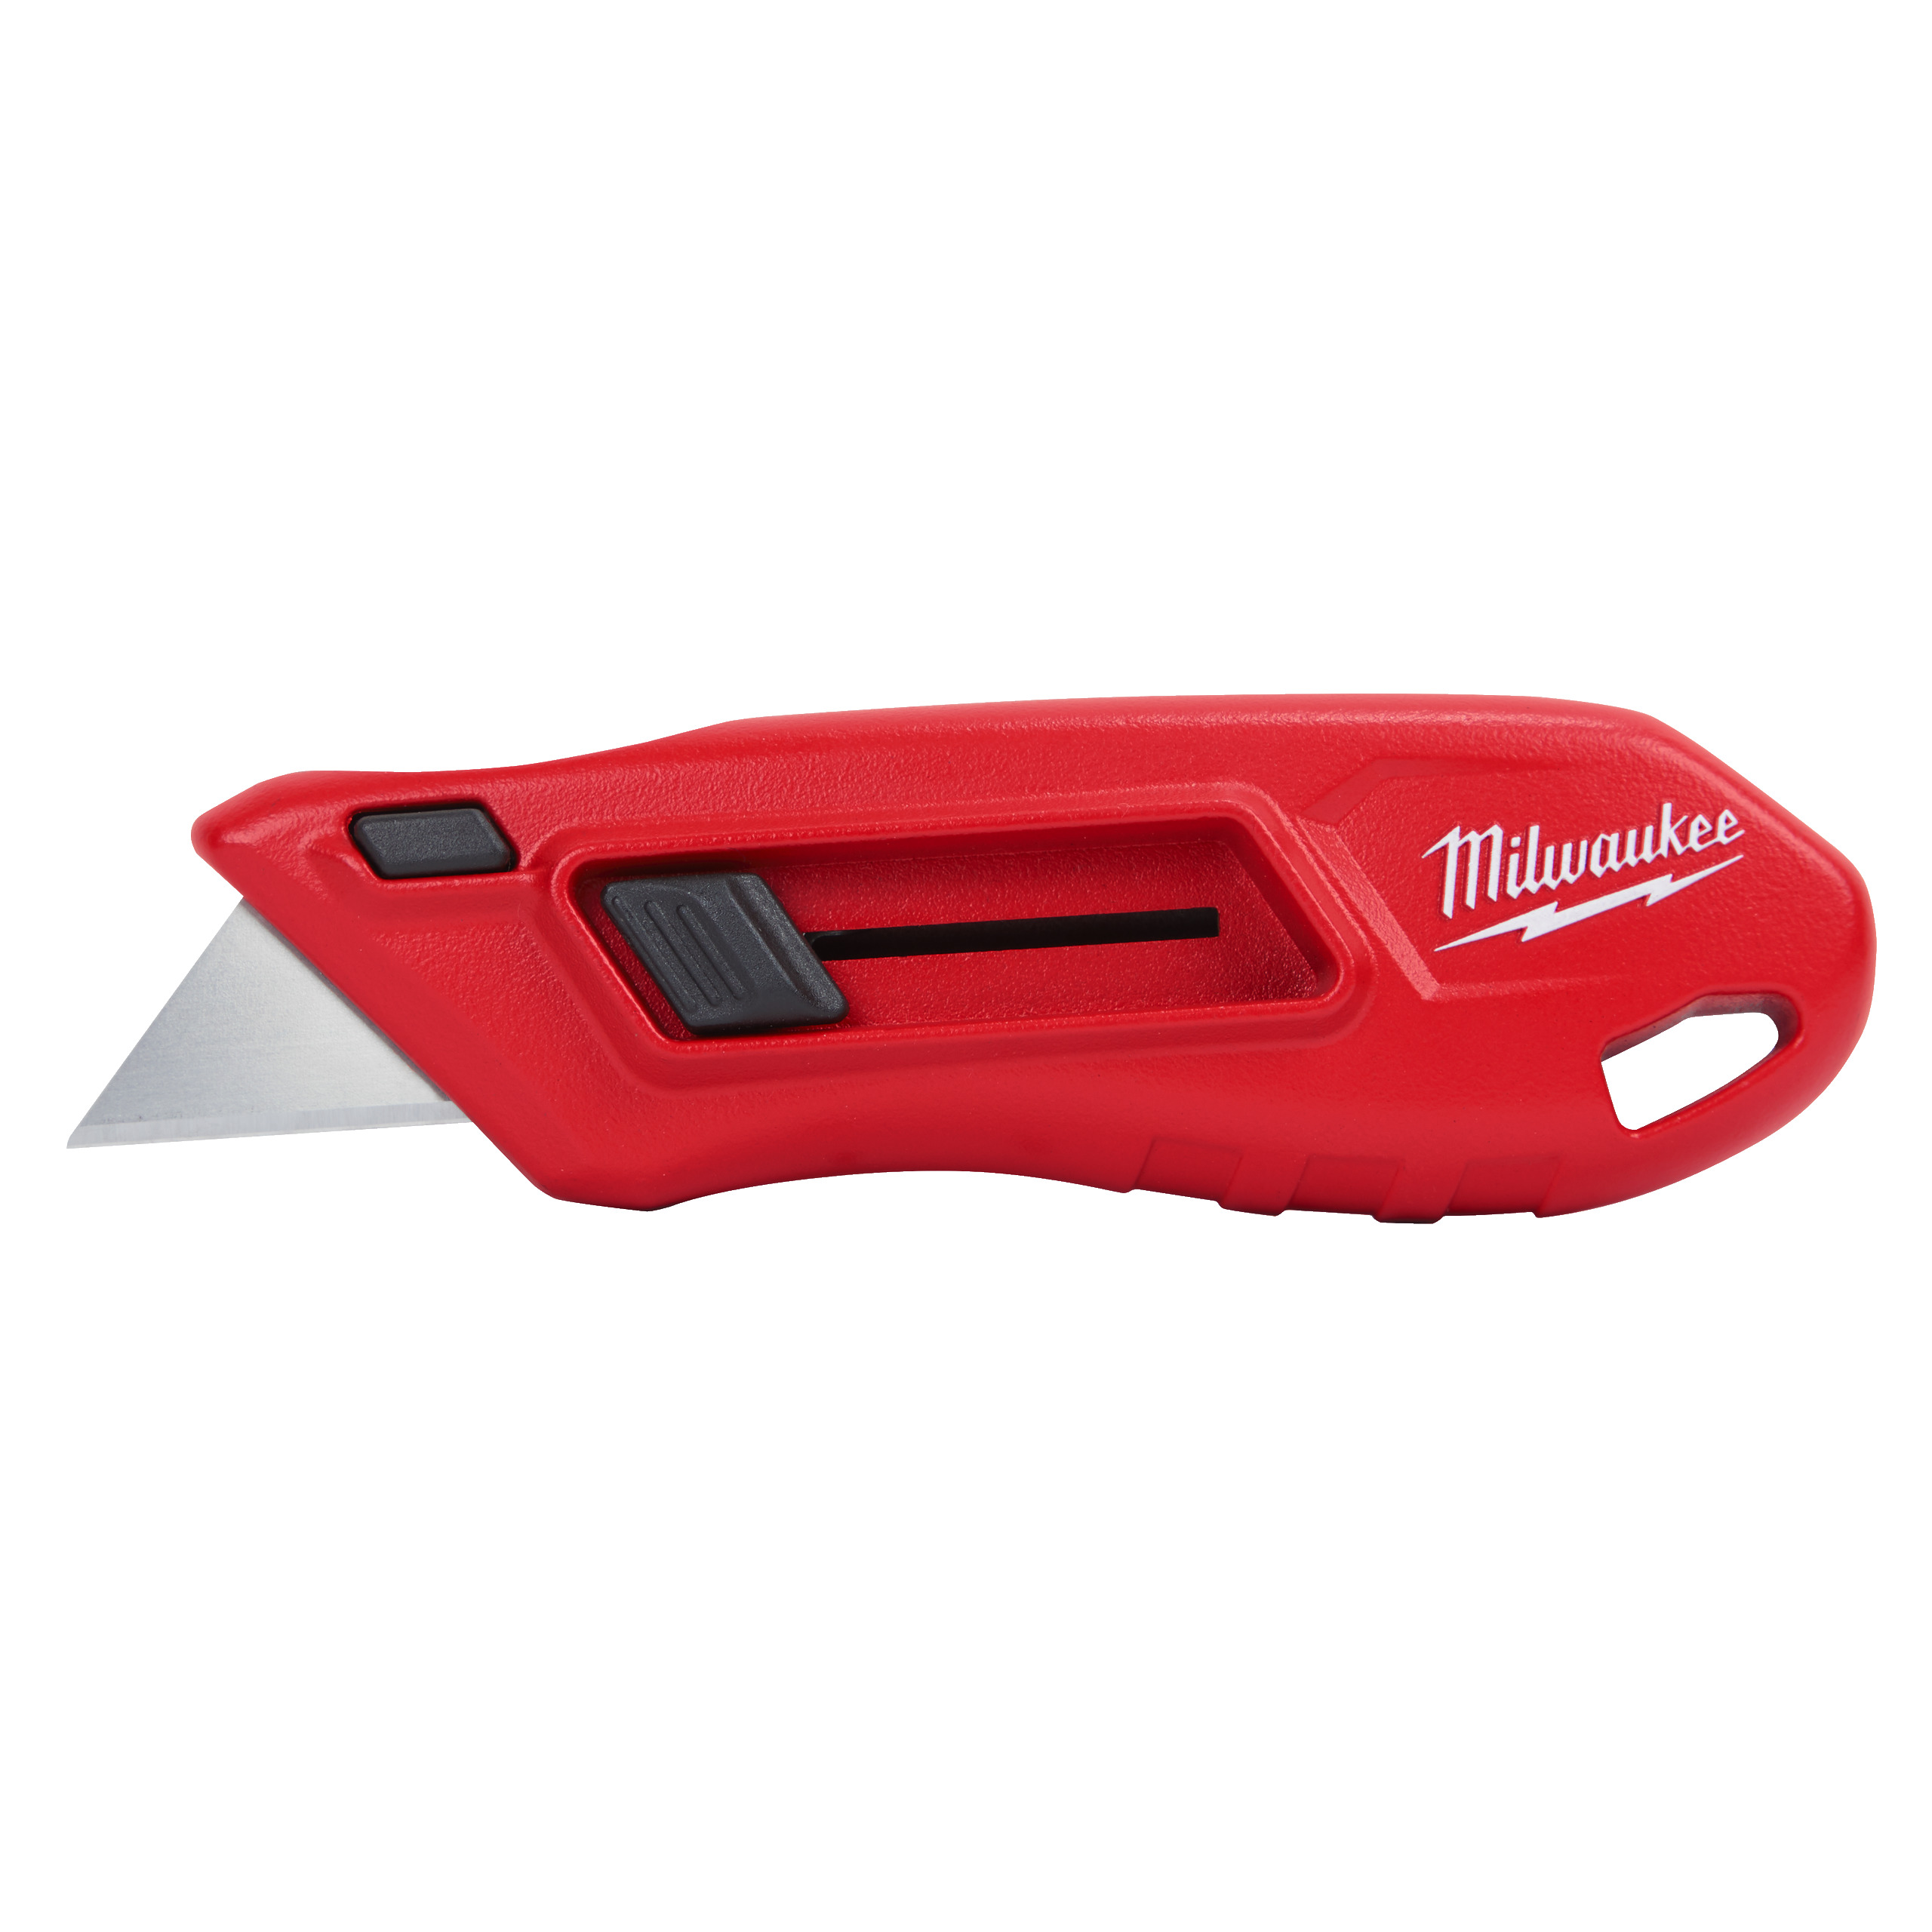 Milwaukee Compact Slide Utility Knife - 1 pc 4932478561